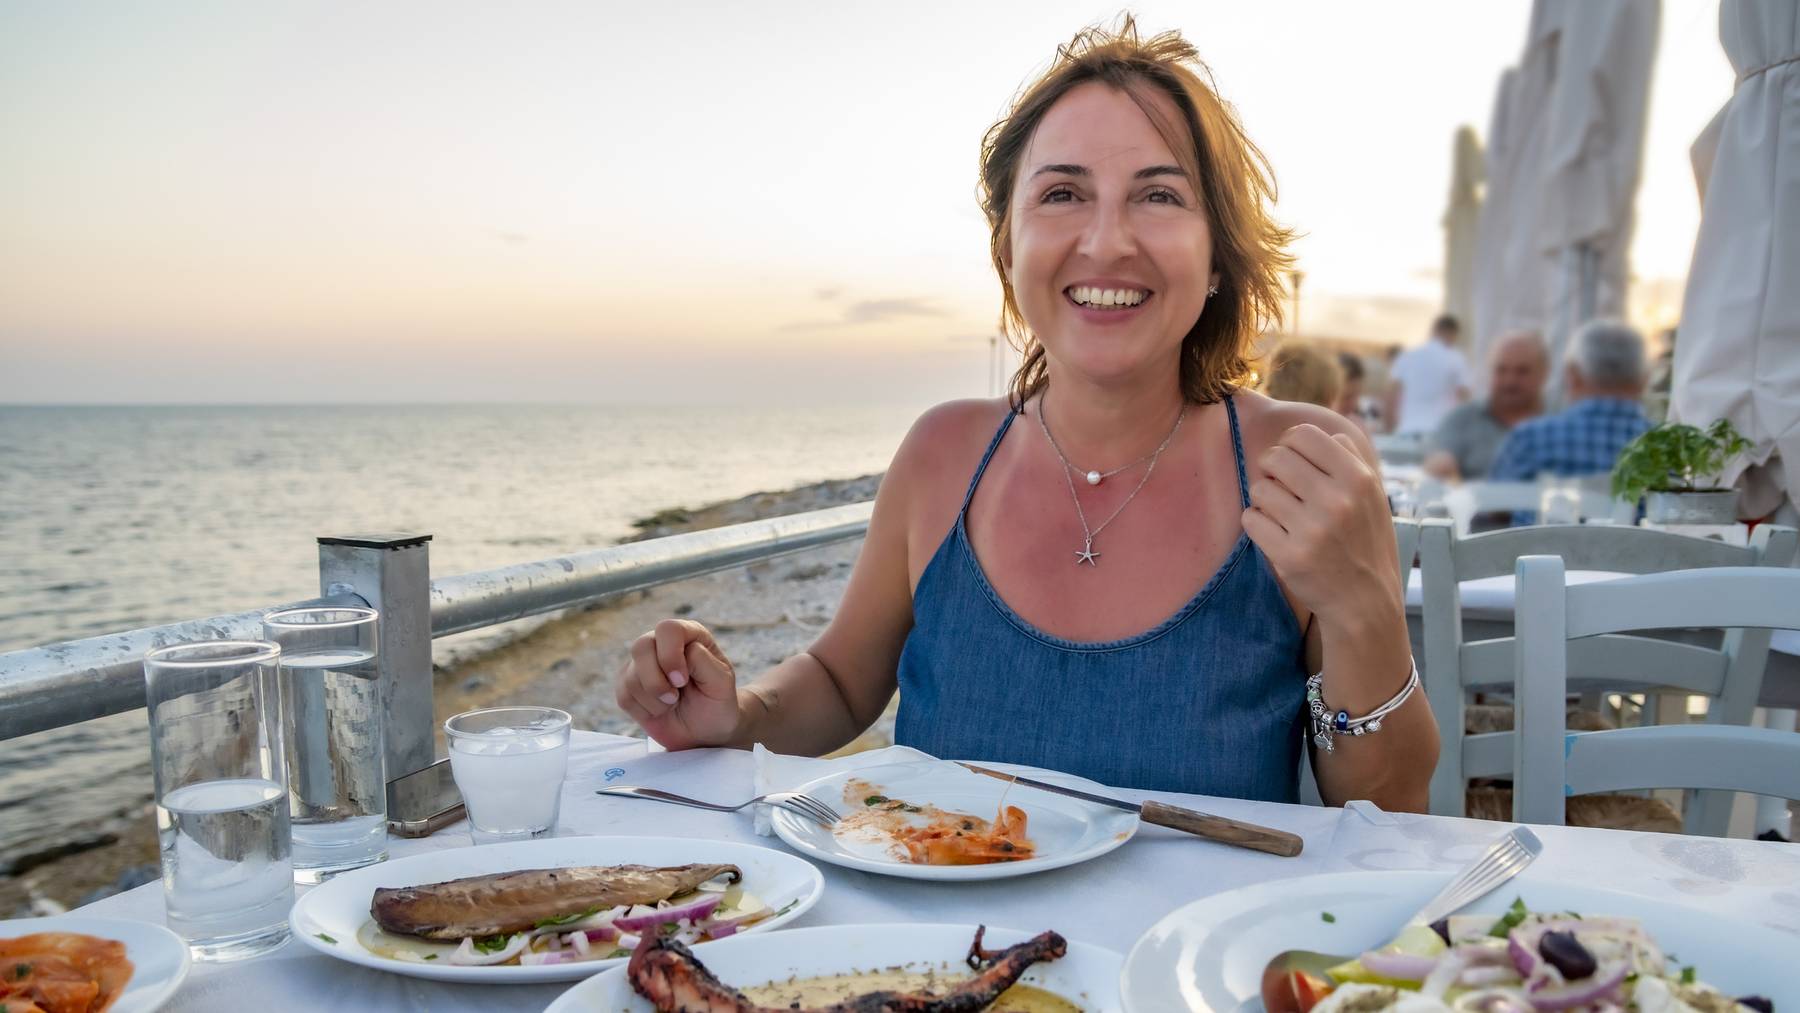 Will man richtig gesund essen, sollte man sich an der griechischen Küche orientieren.